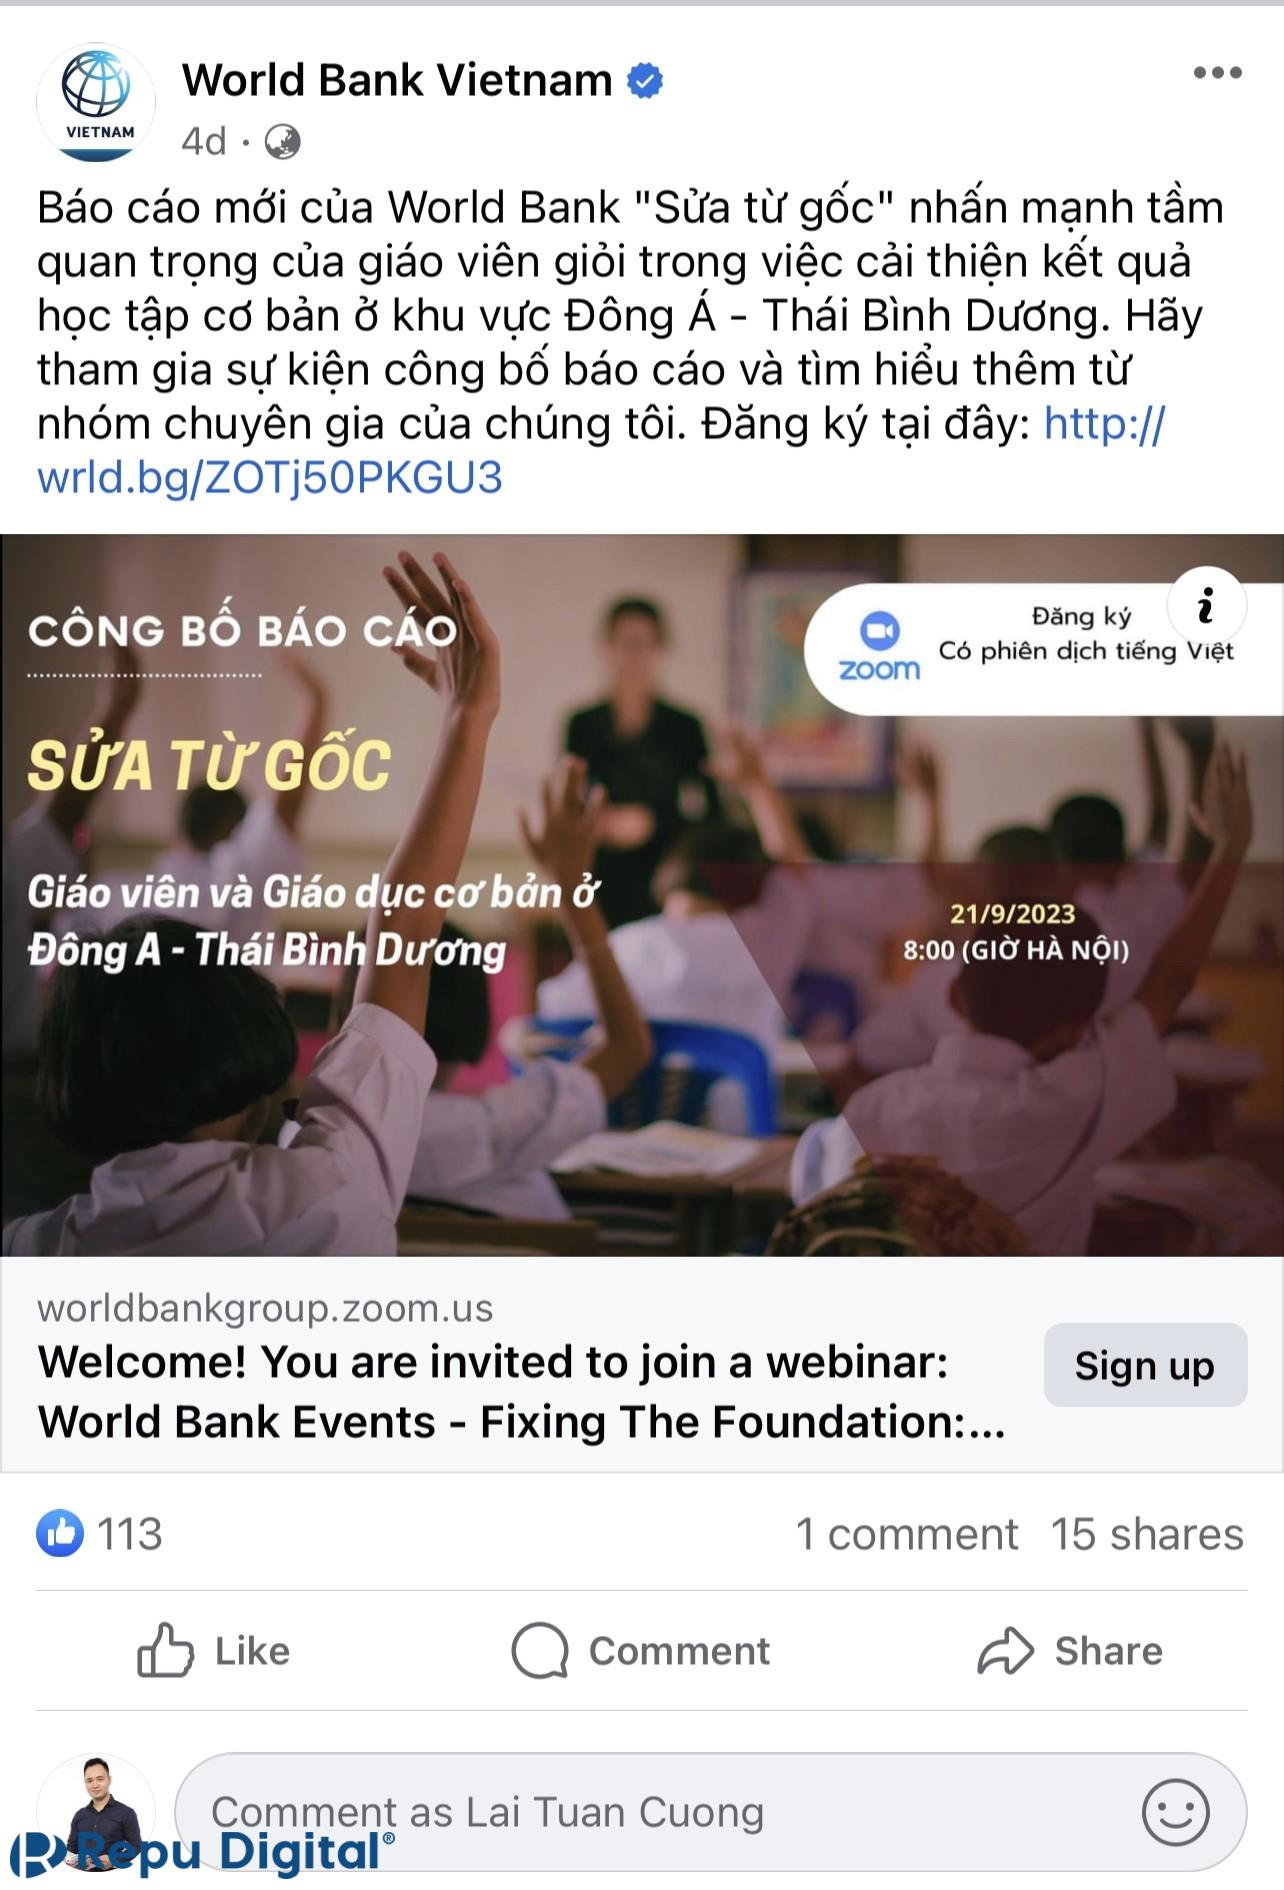 World Bank Vietnam lựa chọn Zoom Webinar để tổ chức sự kiện